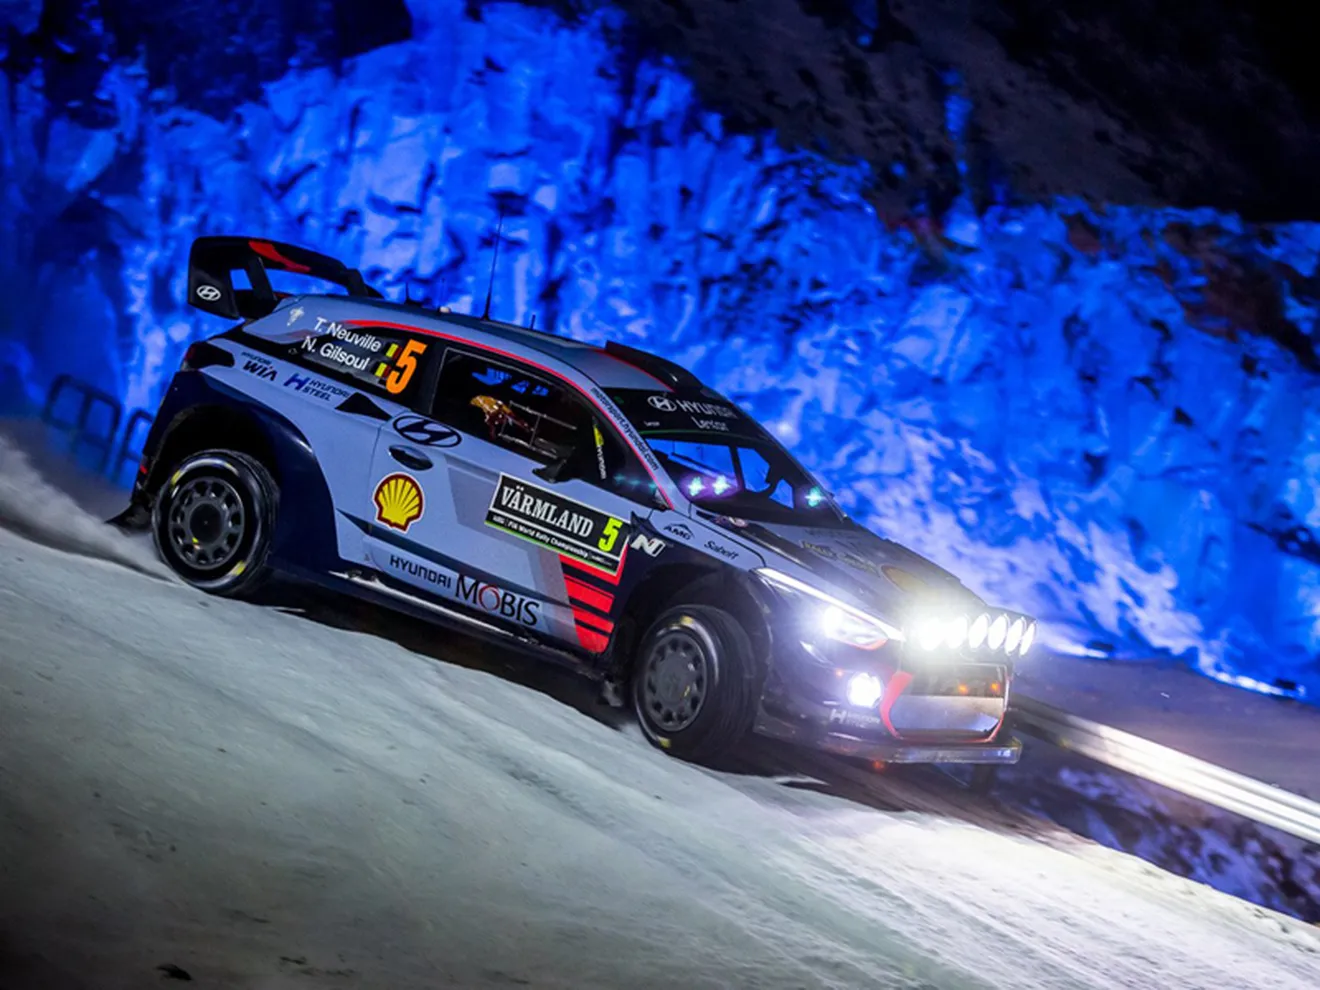 Thierry Neuville tira el Rally de Suecia al cubo de la basura